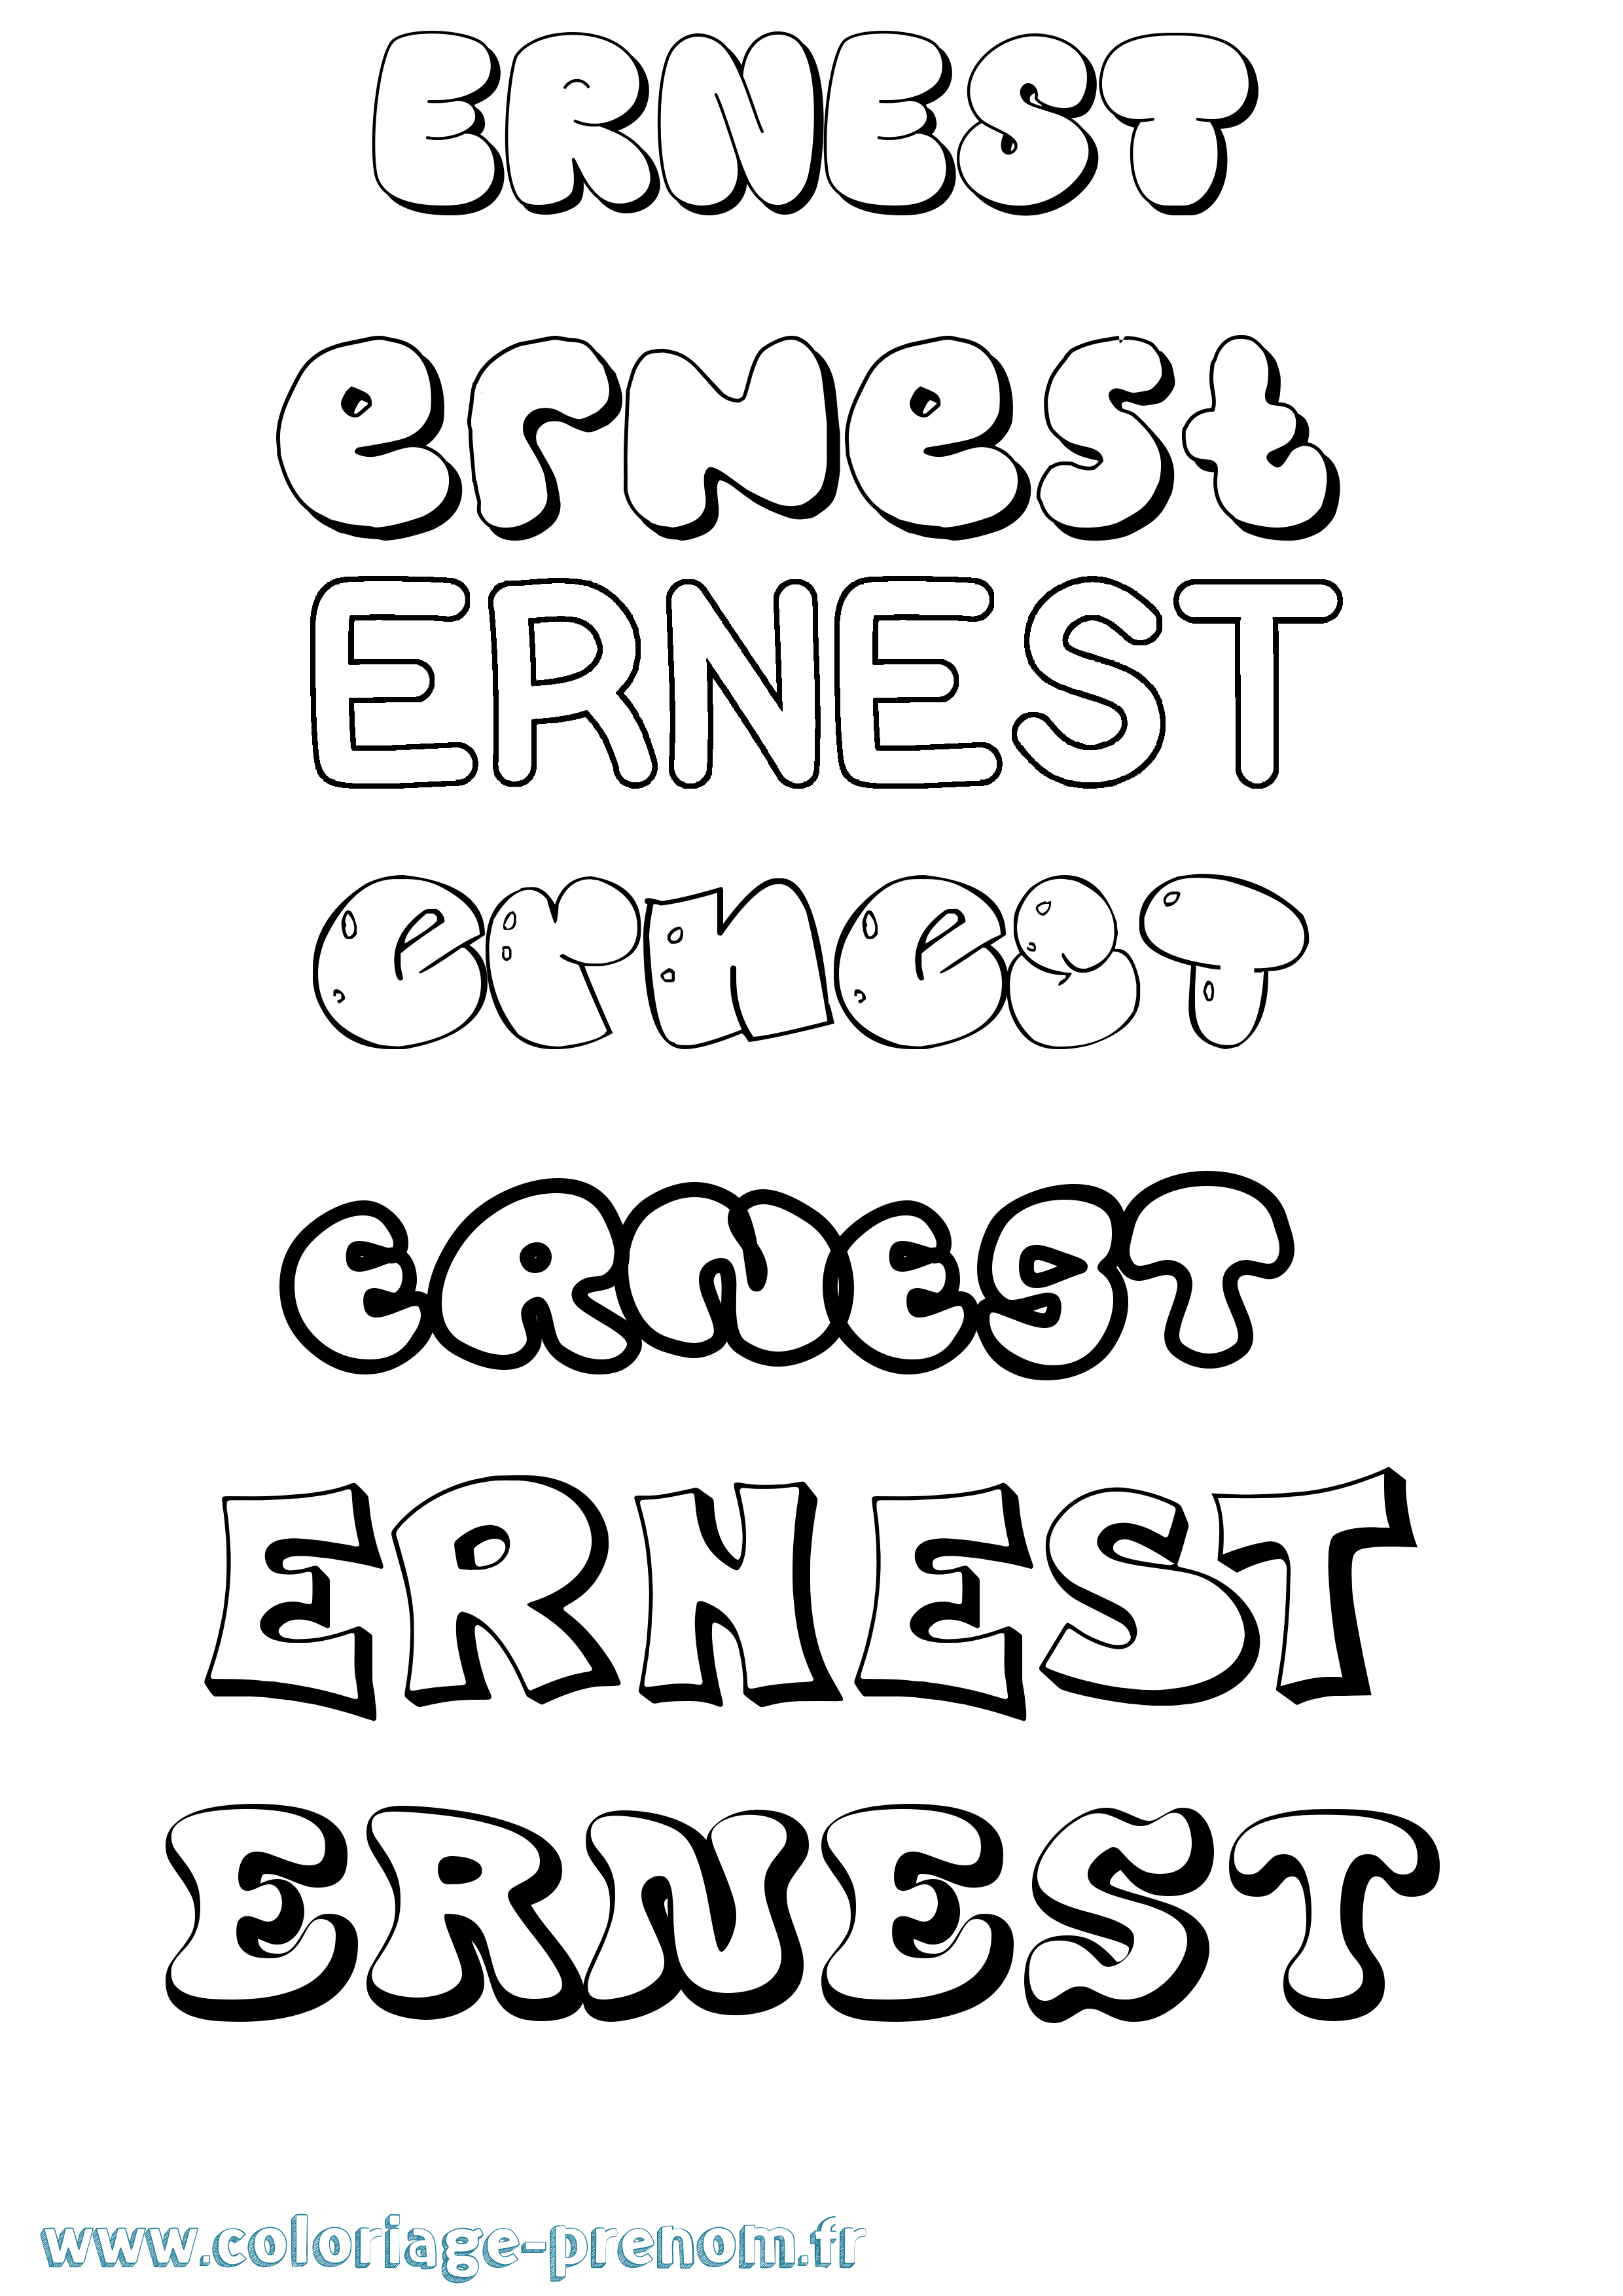 Coloriage prénom Ernest Bubble